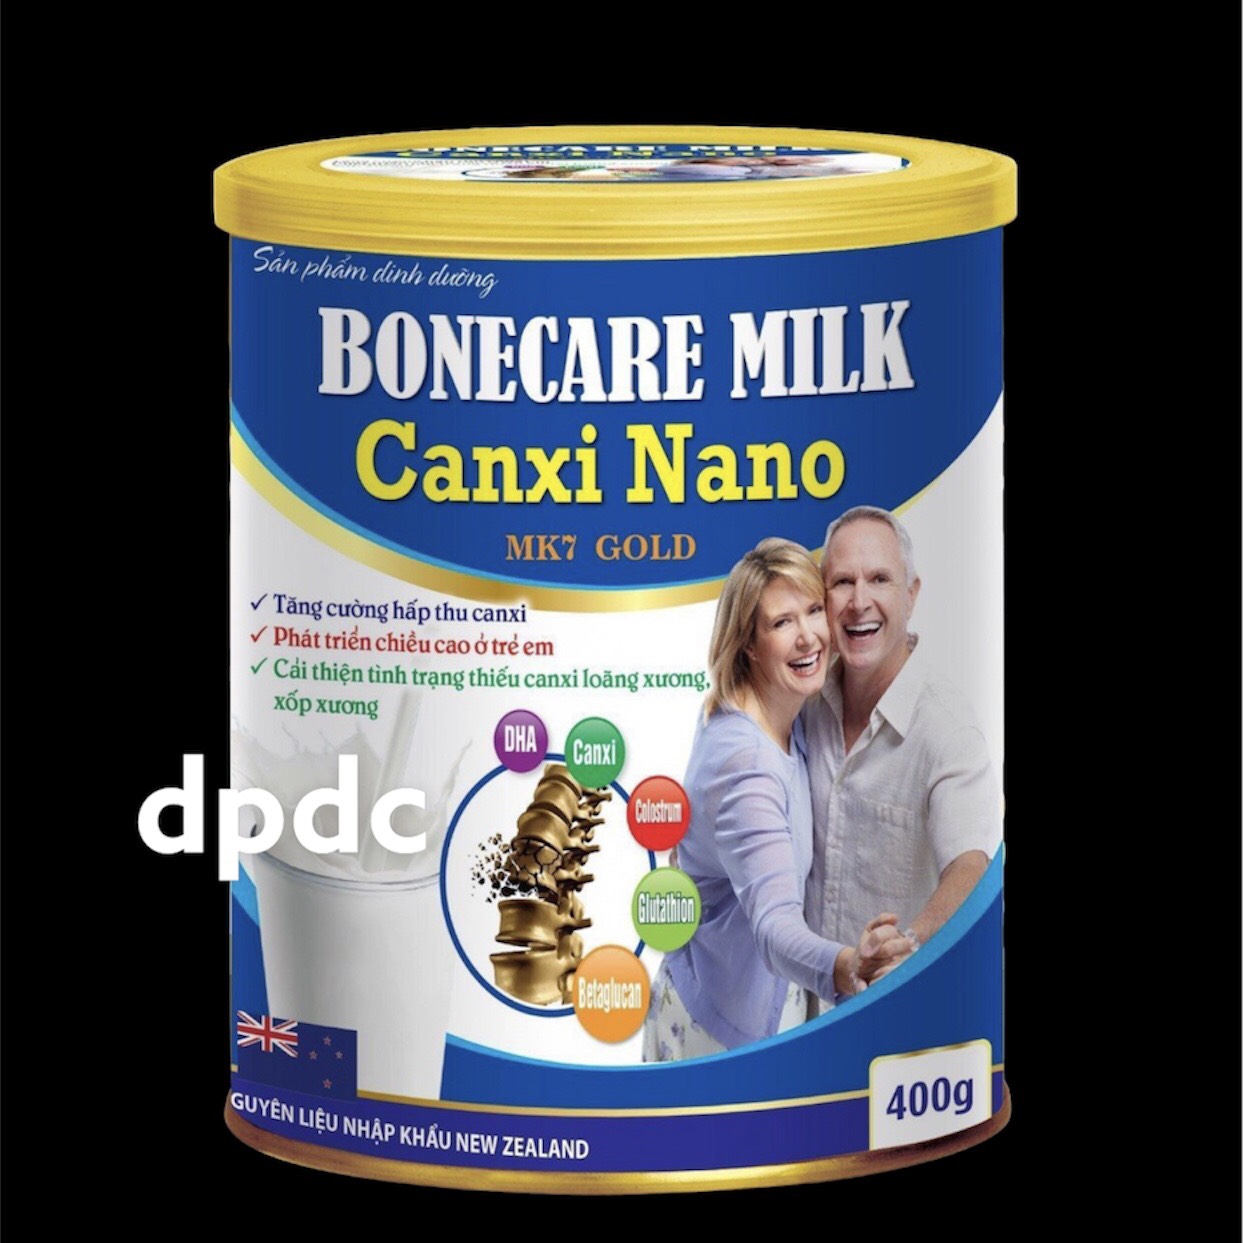 Sữa Bột Tăng Chiều Cao Bonecare Milk Canxi Nano MK7 Gold- Tăng Cường Hấp Thu Canxi Phát Triển Chiều Cao Ở Trẻ Em Cải Thiện Tình Trạng thiếu Canxi Loãng Xương xốp xương